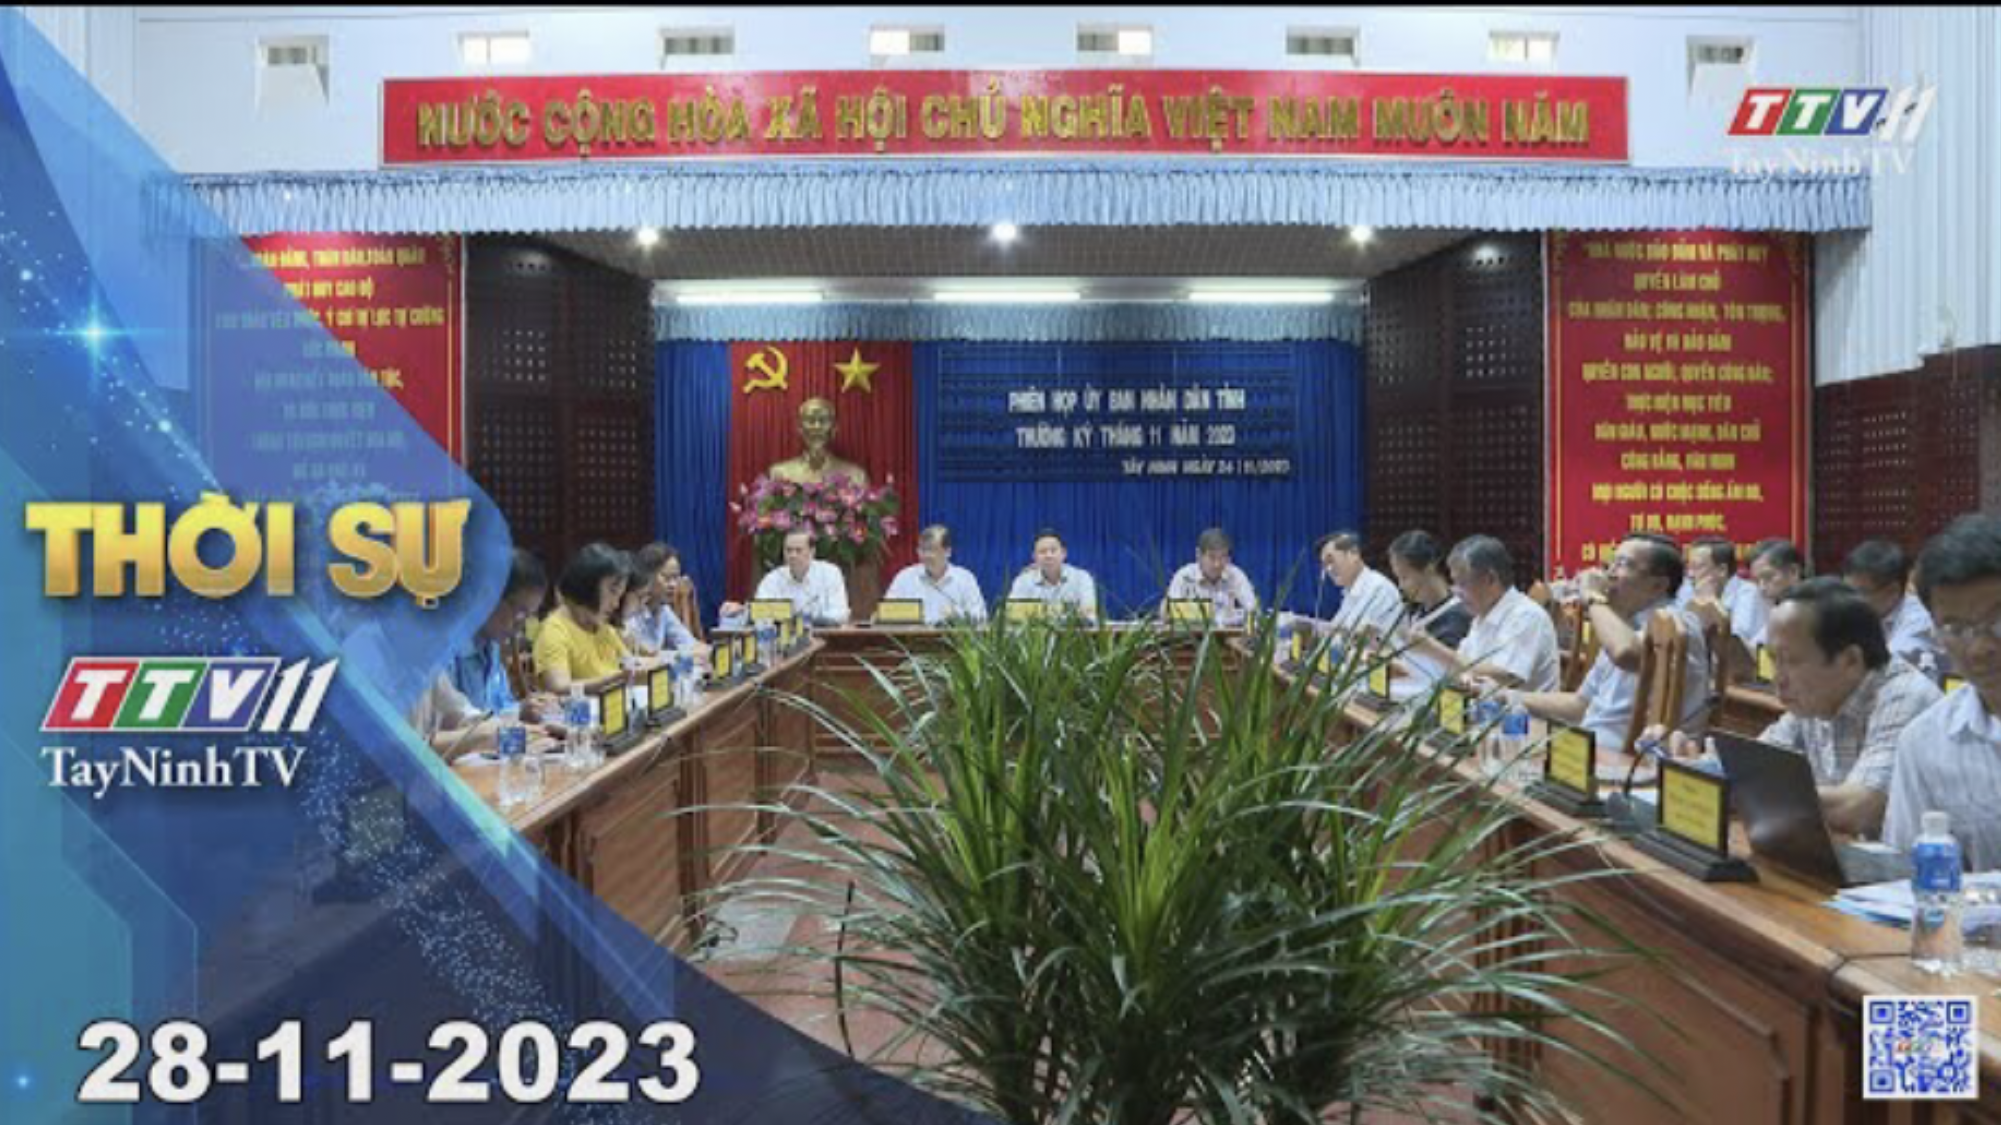 Thời sự Tây Ninh 28-11-2023 | Tin tức hôm nay | TayNinhTV